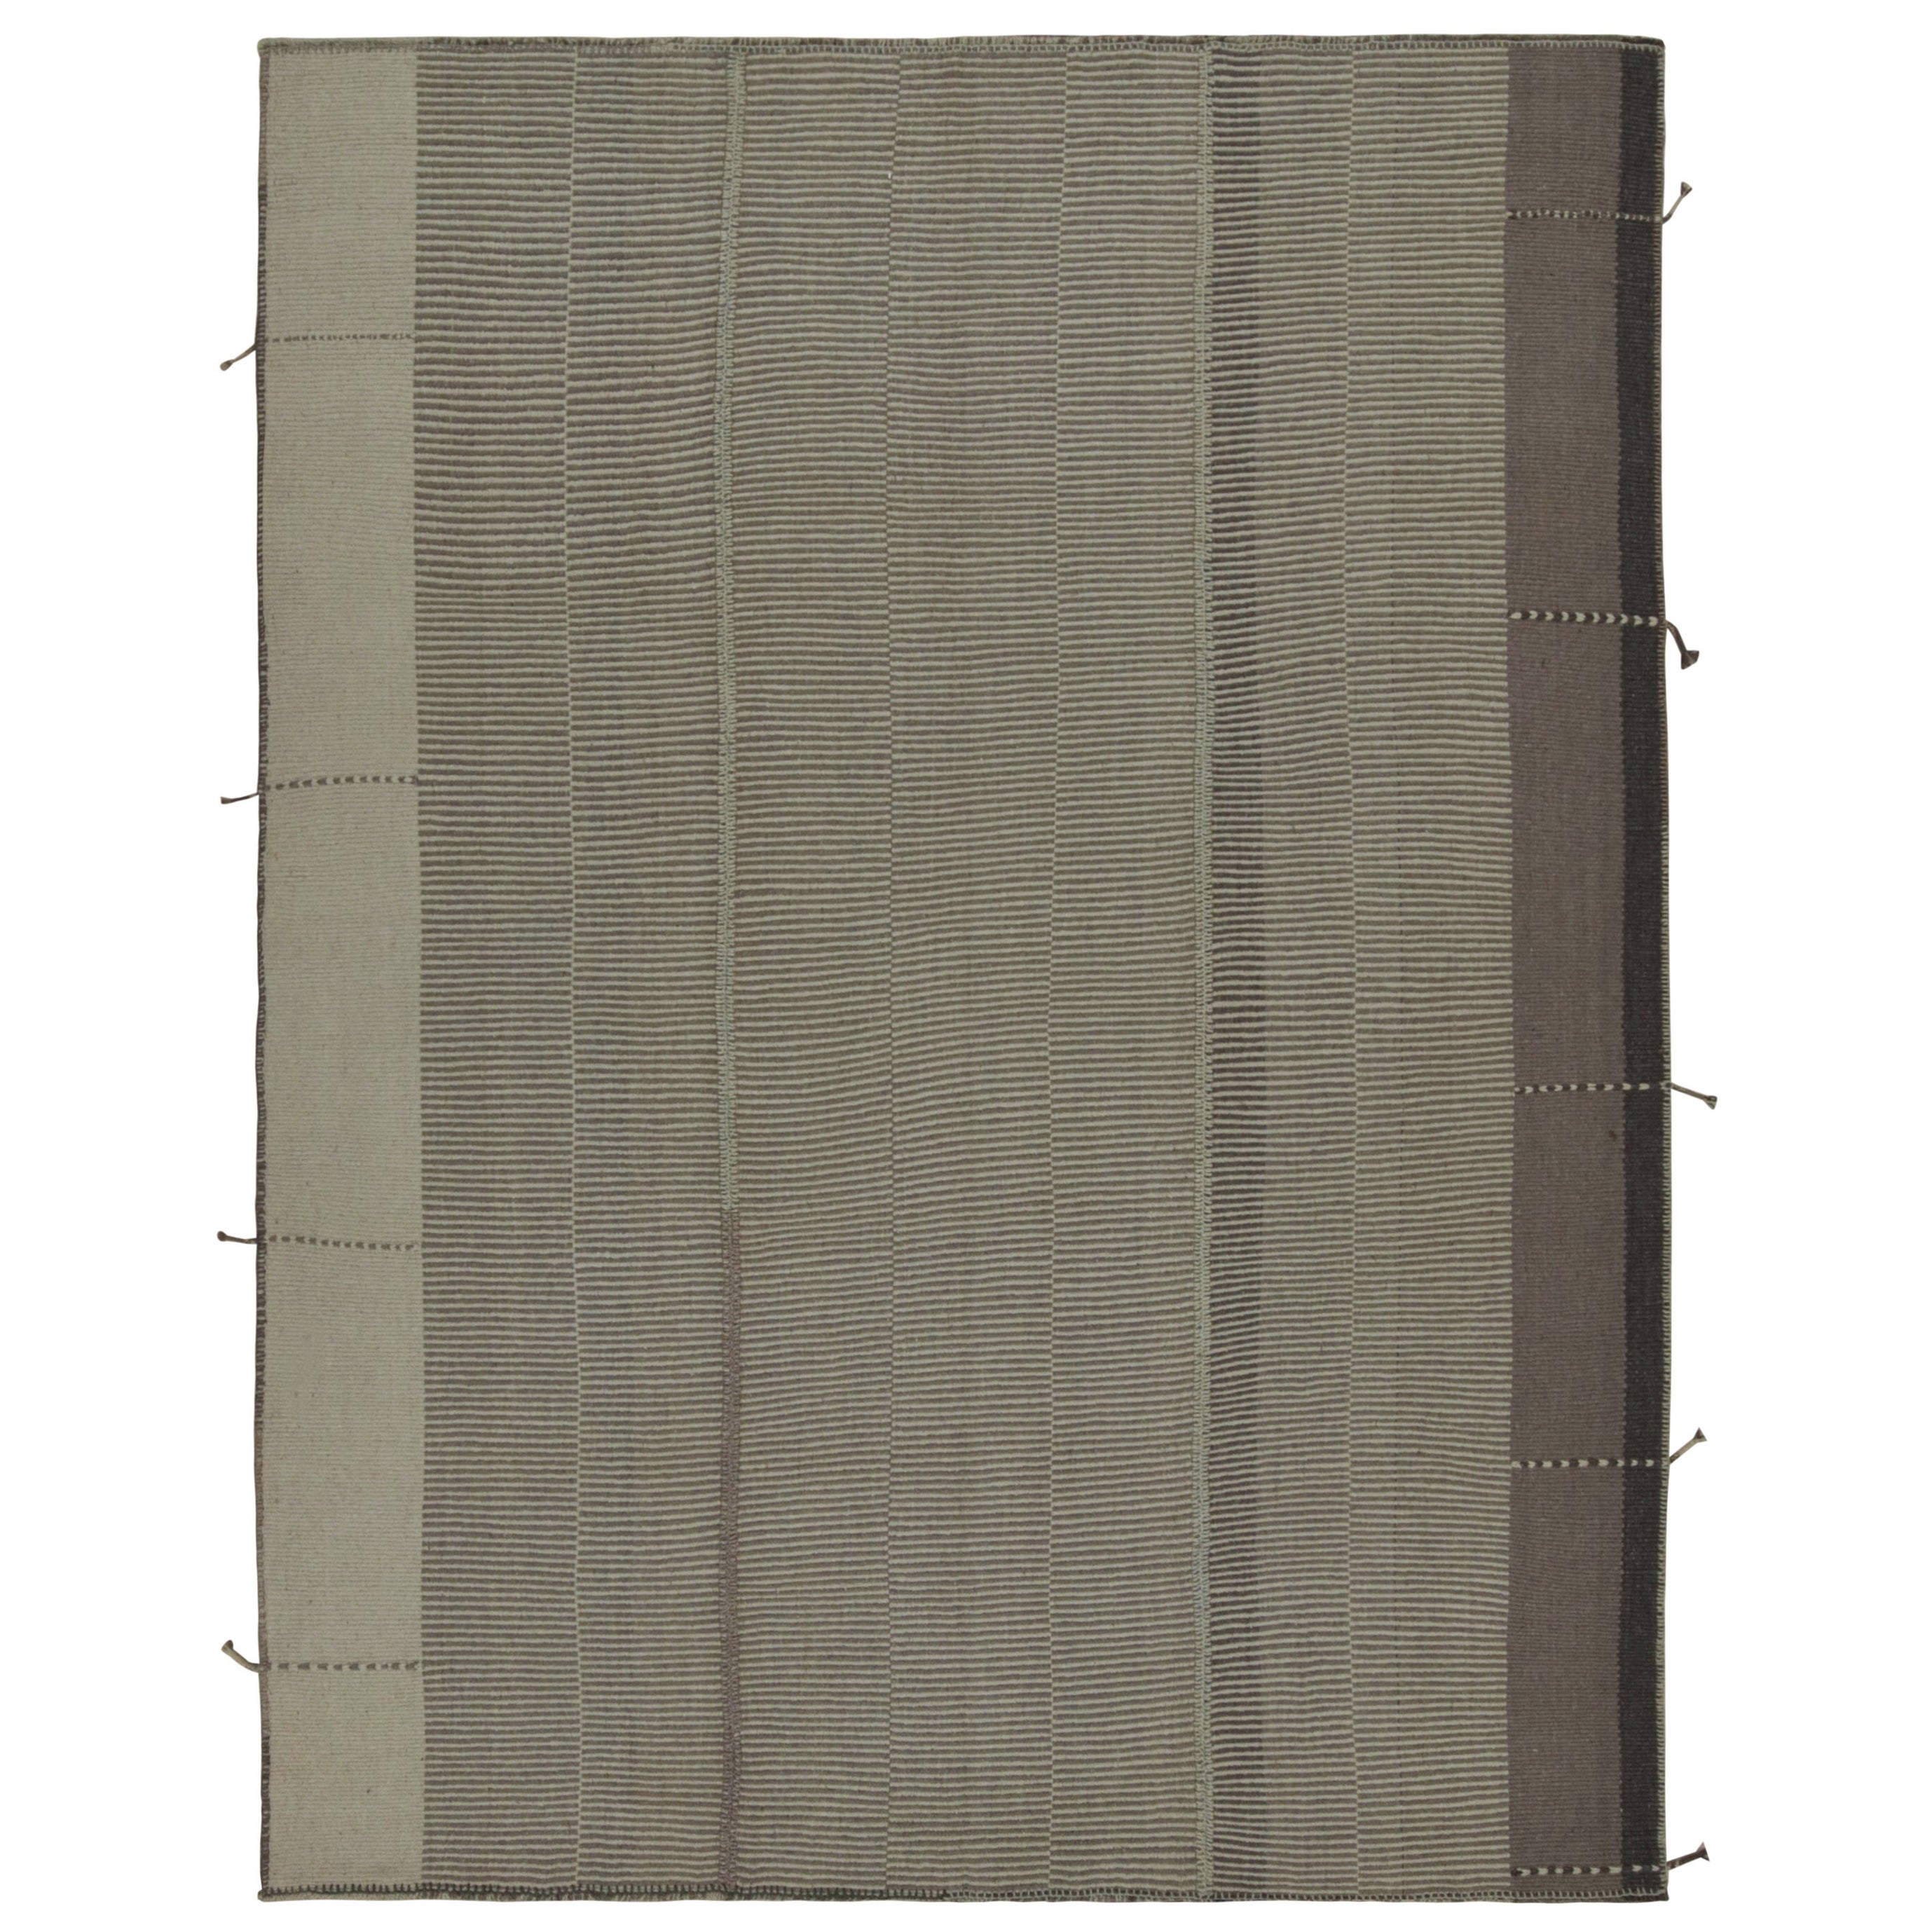 Rug & Kilim’s Modern Kilim in Beige & Gray stripes For Sale